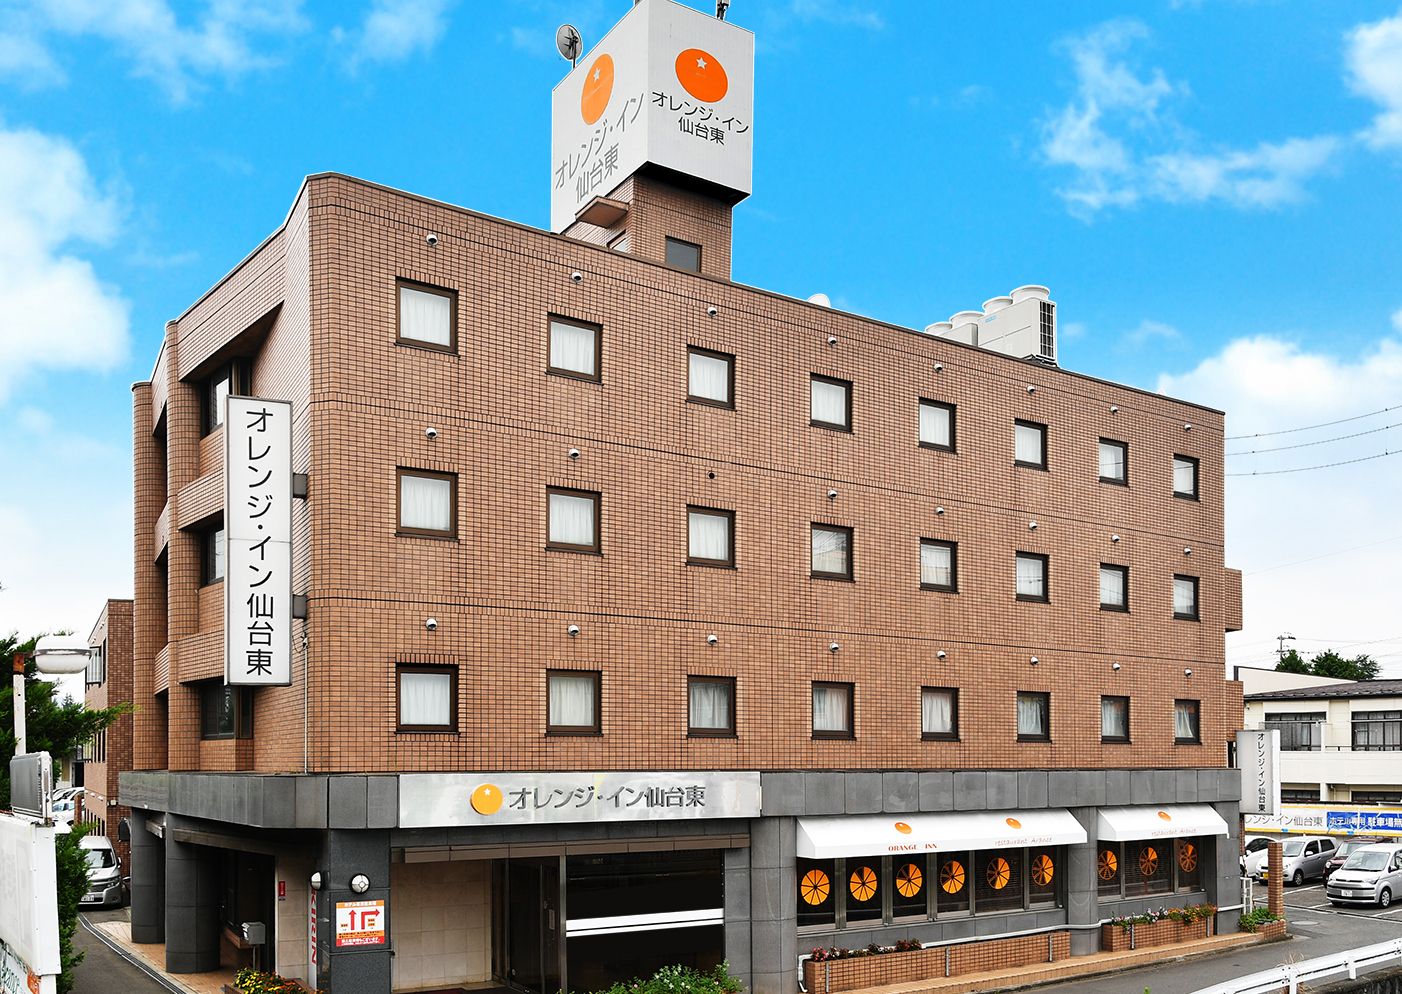 仙台東橙色 Inn 飯店